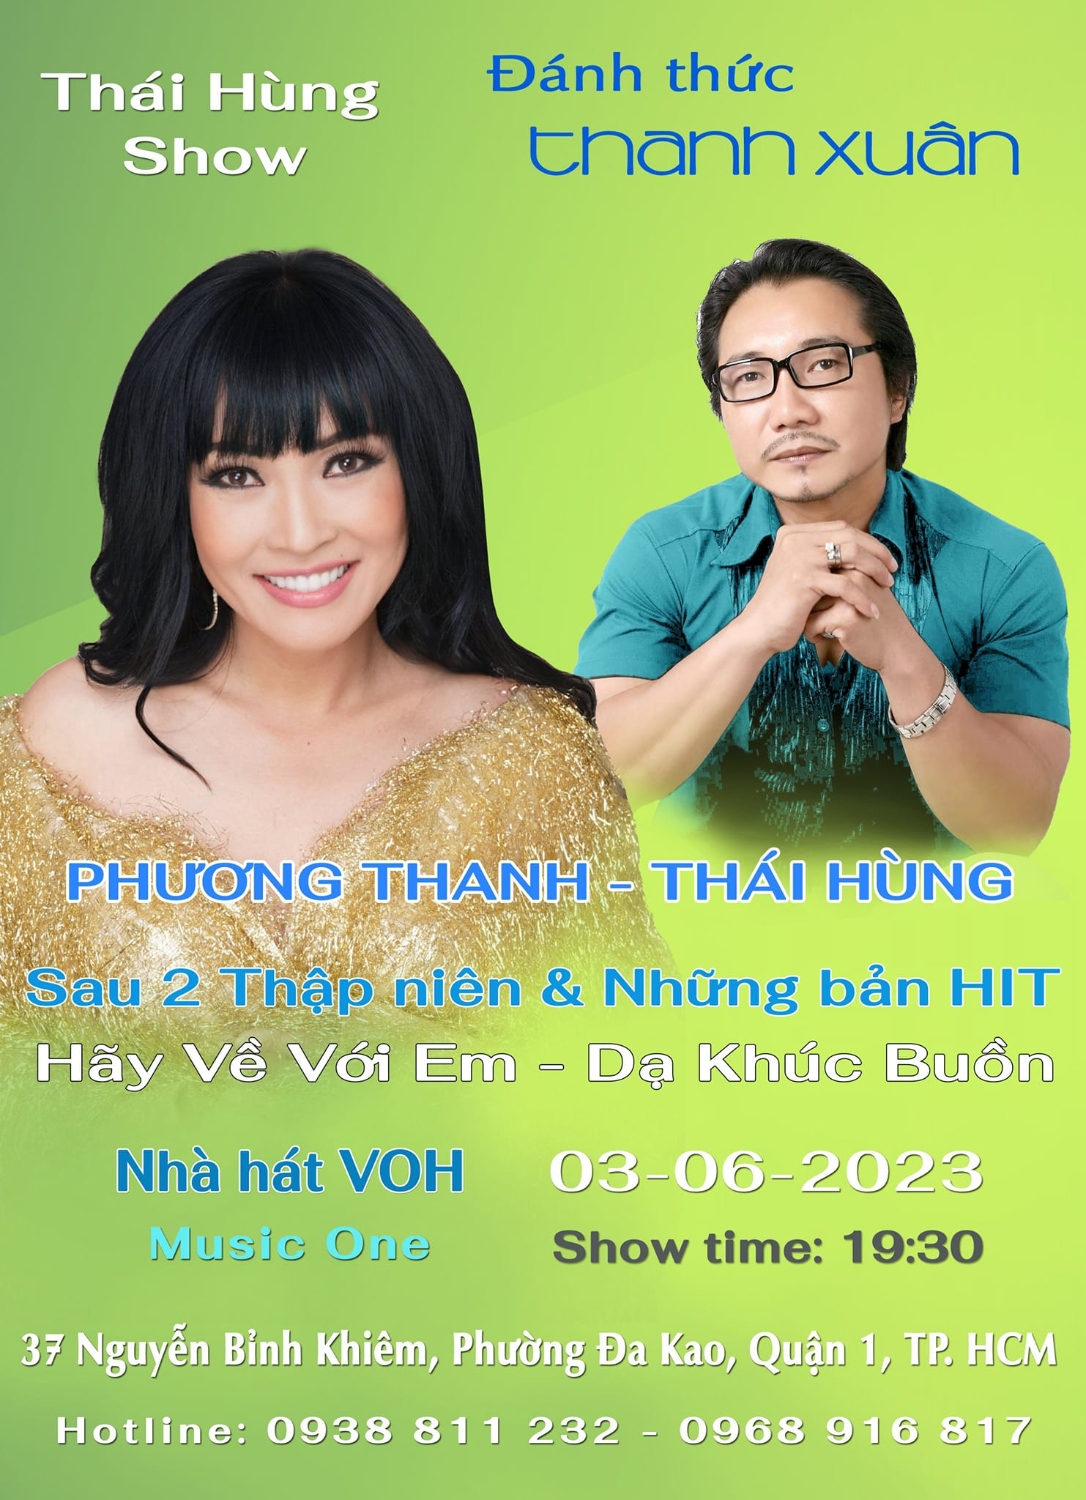 Thai Hung Show 4